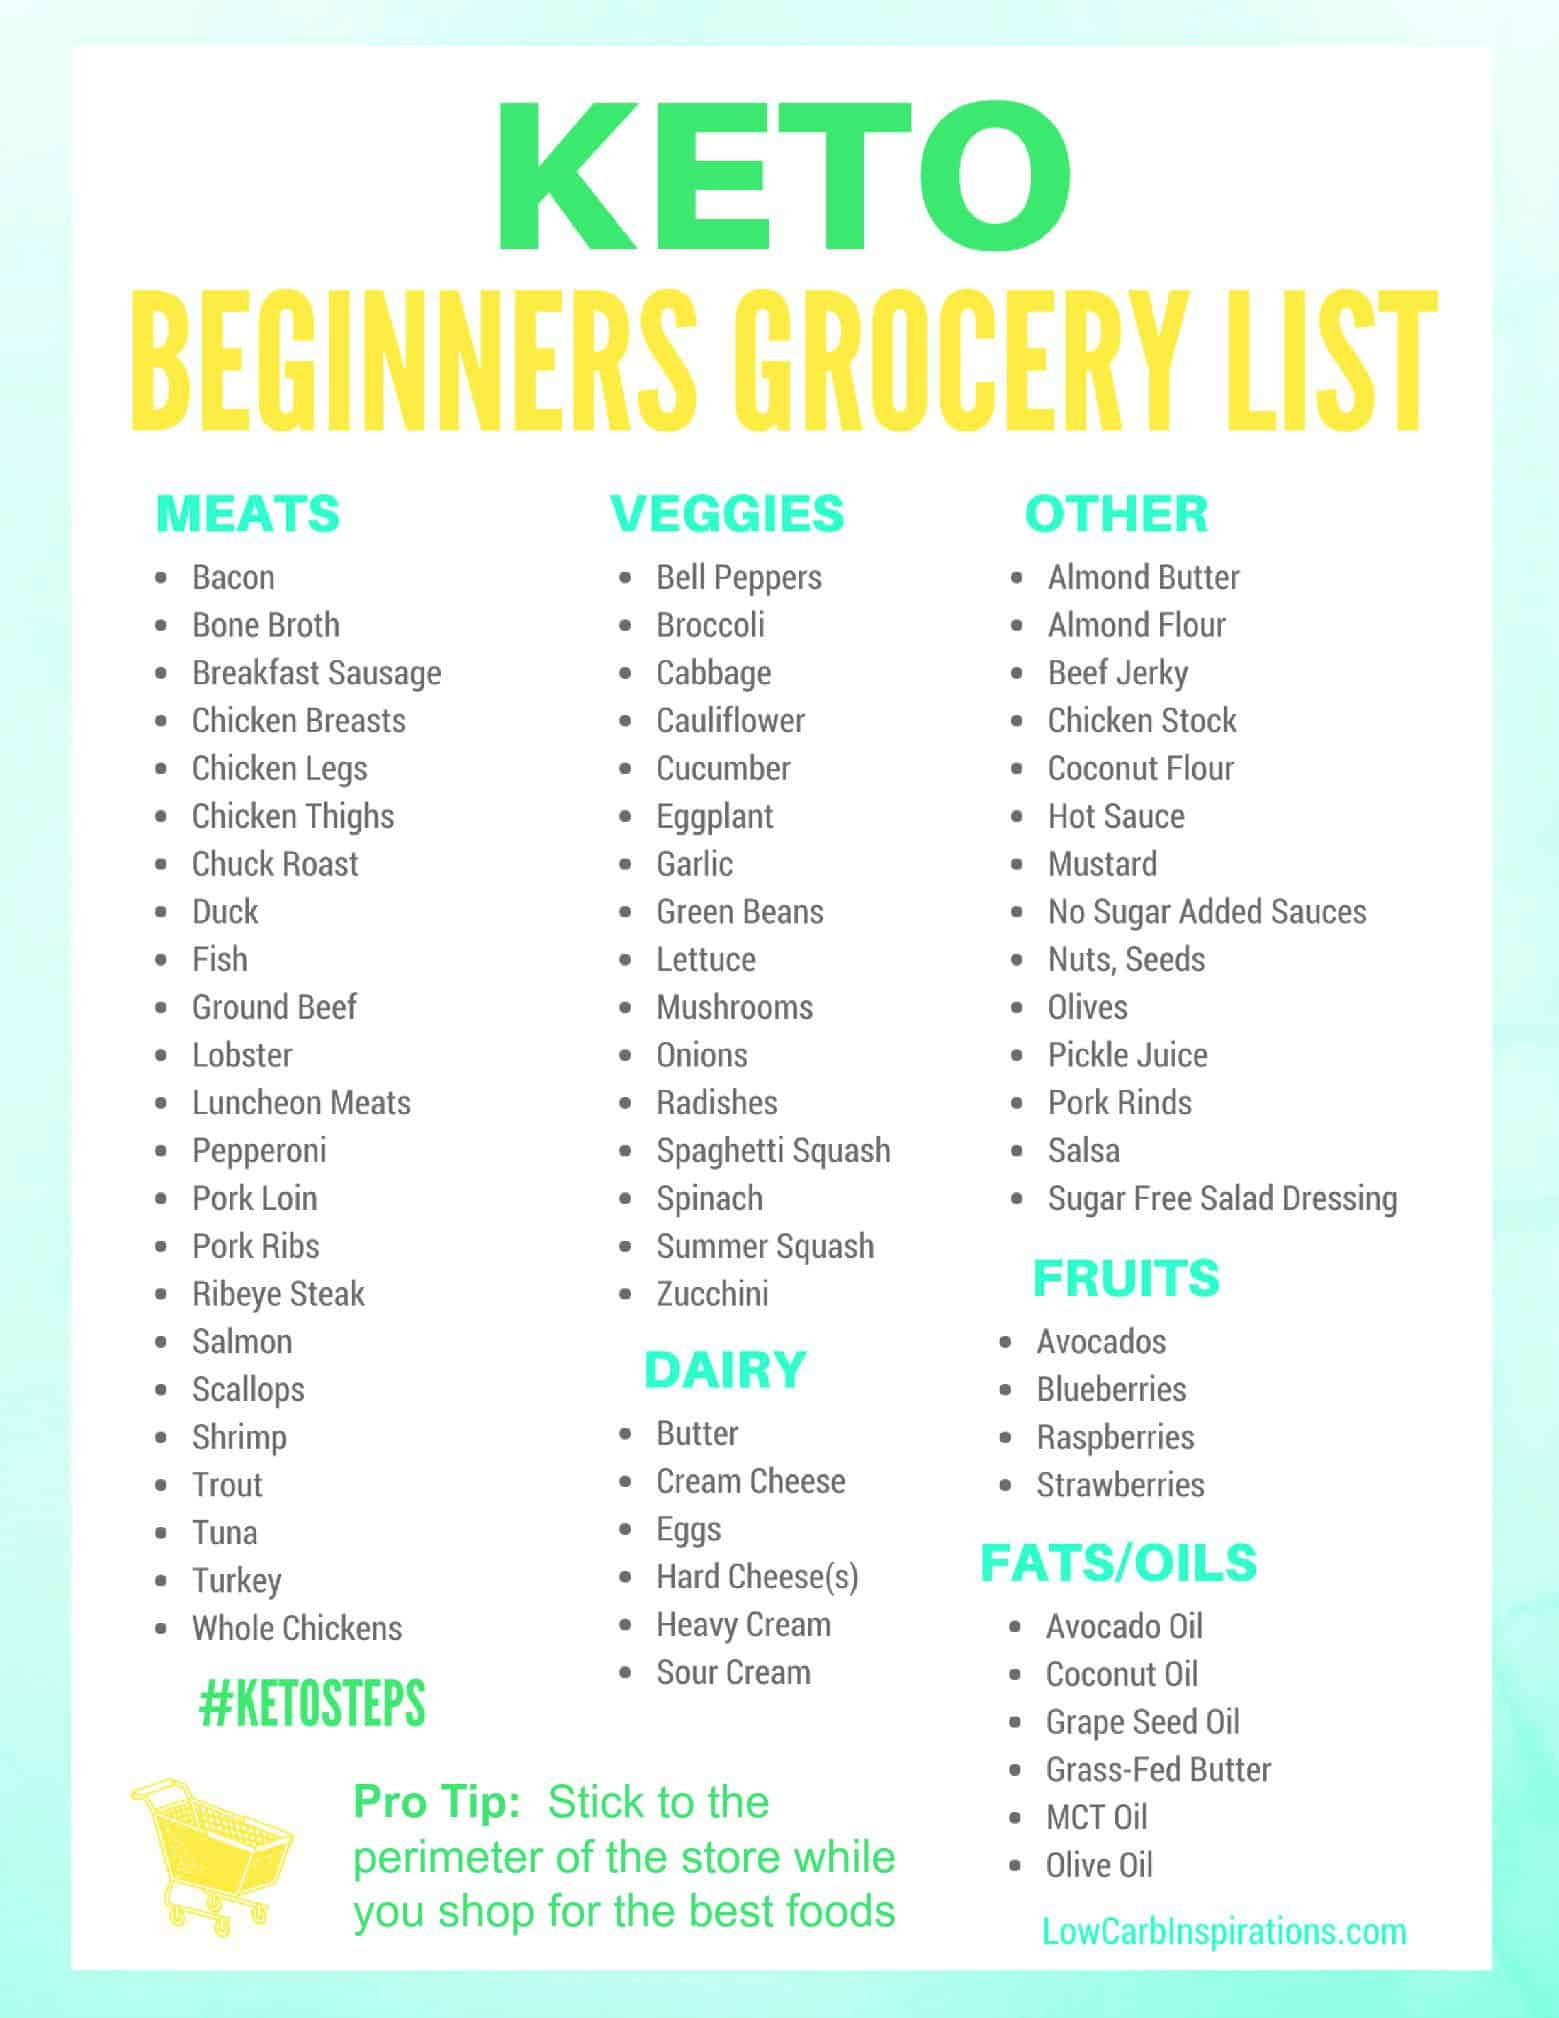 Keto Diet Shopping List For Beginners
 Keto Grocery List for Beginners iSaveA2Z